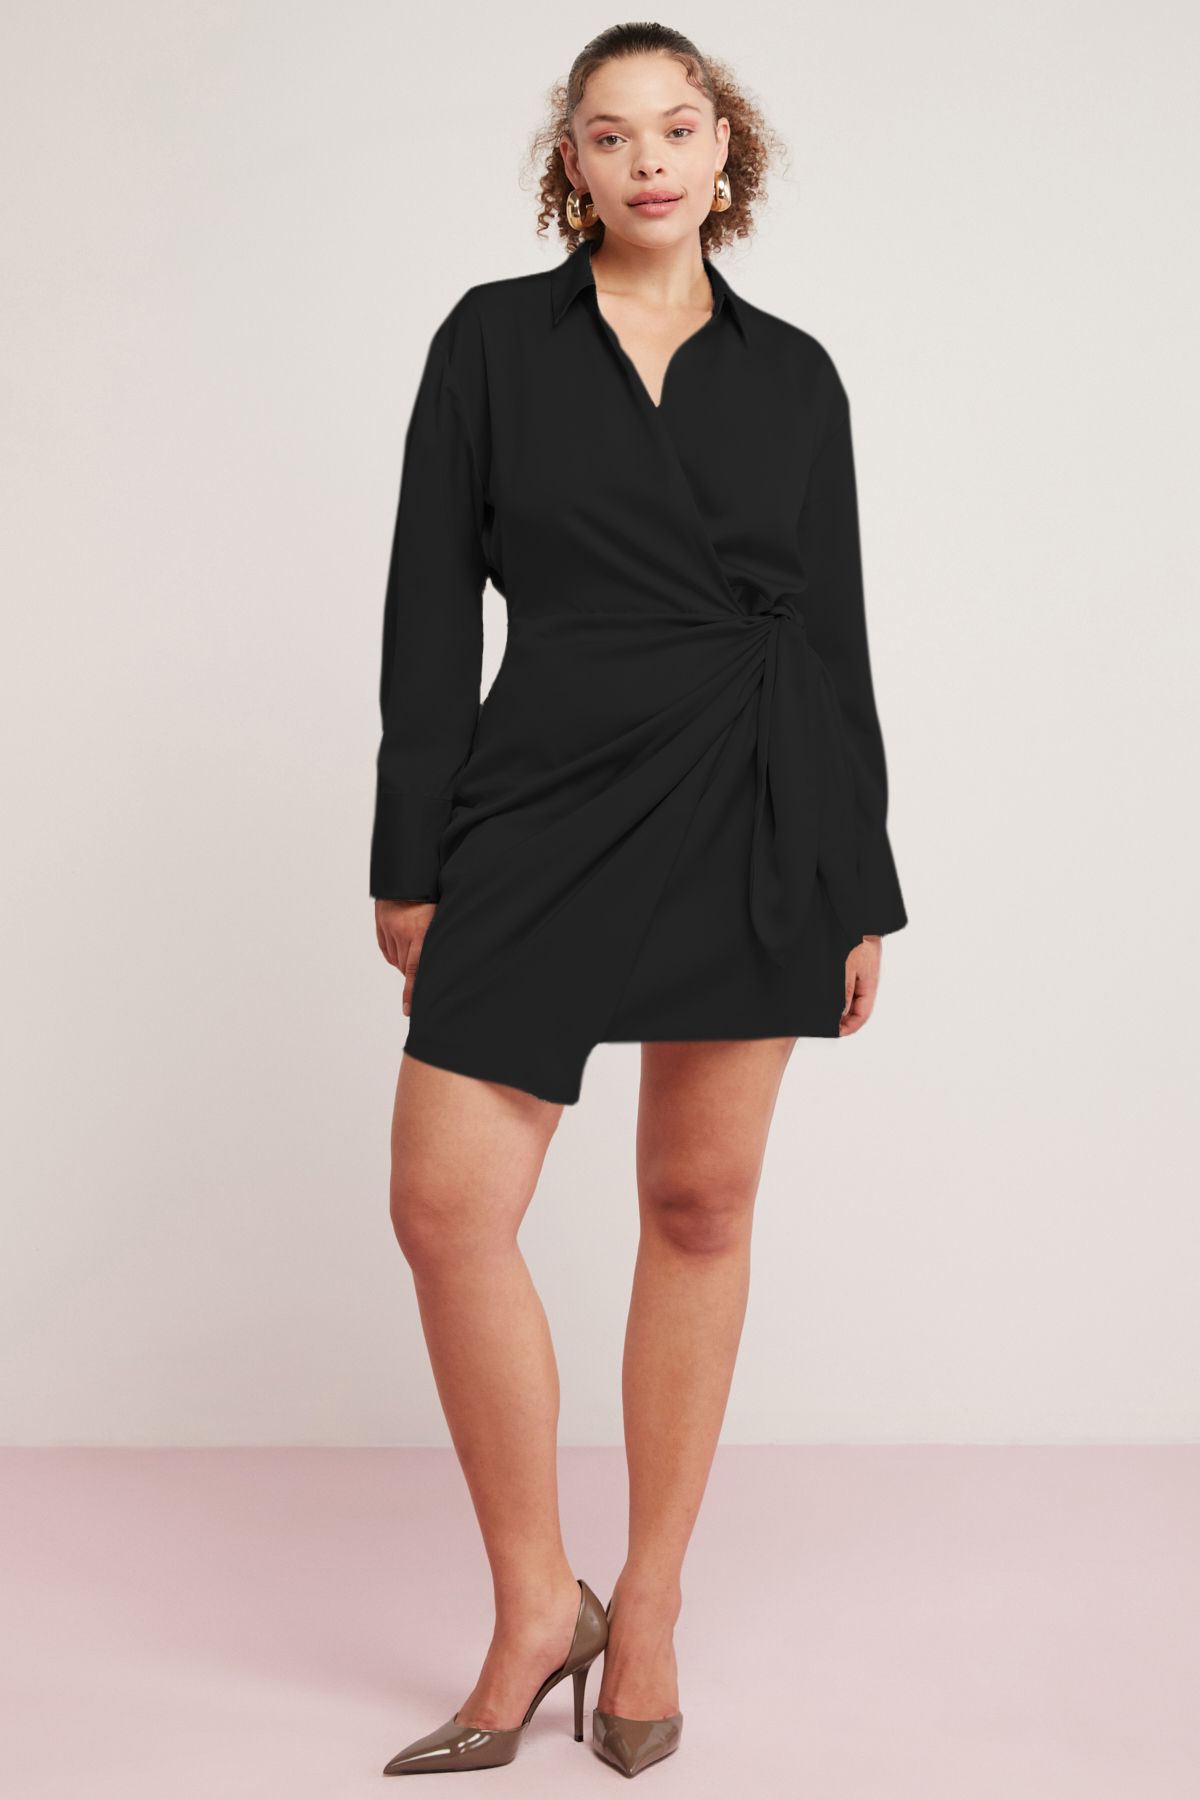 ETHIQUET Dıone Kadın Floş Viskon Saten Asimetrik Kesim Bağlamalı Kısa Siyah Büyük Beden Elbise